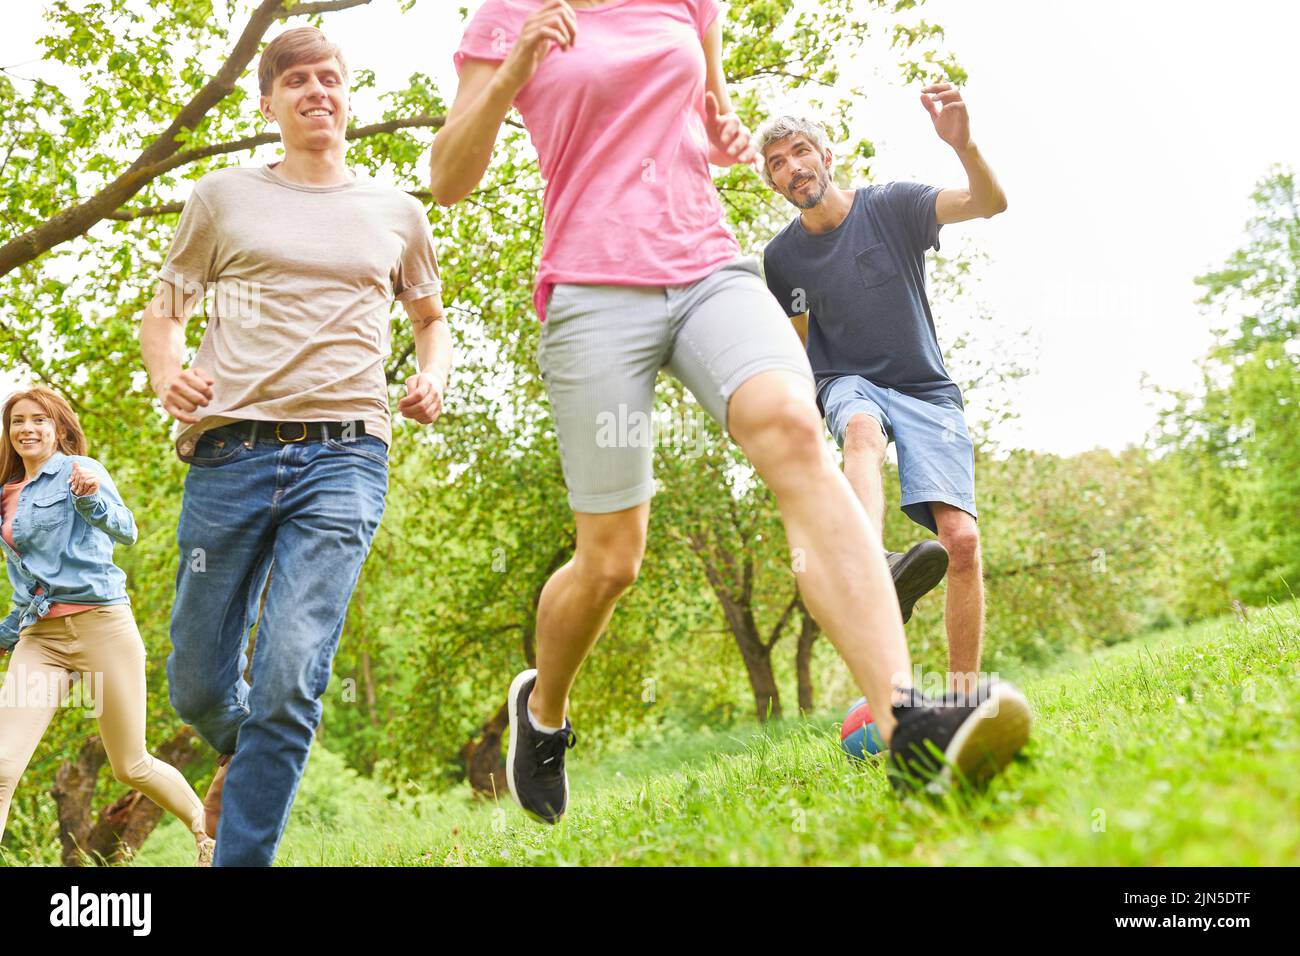 Eine Gruppe junger Menschen, die im Sommer als Fitnesstraining oder Spiel auf einer Wiese laufen Stockfoto